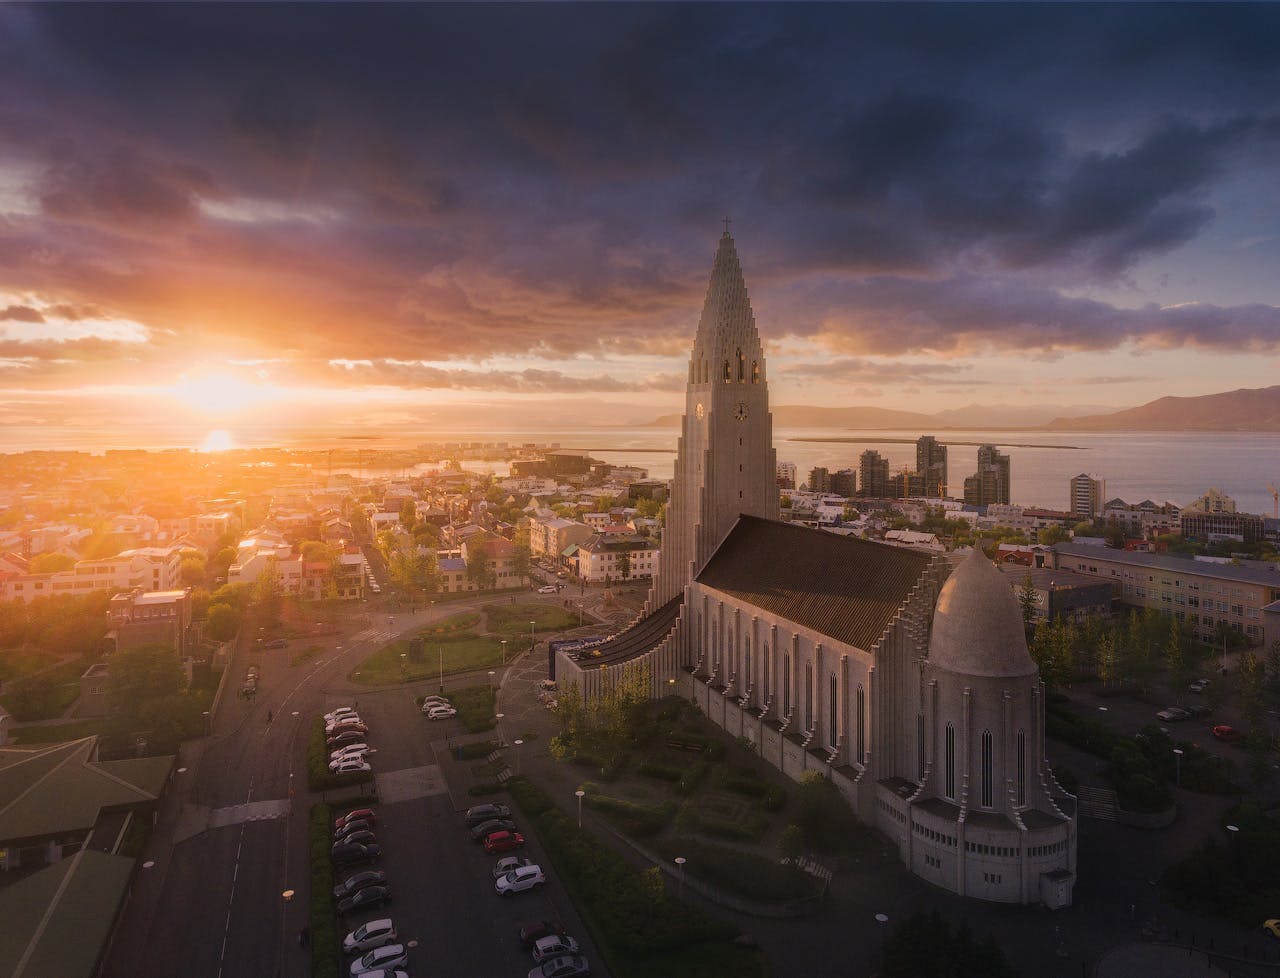 从哈爾格林姆教堂Hallgrímskirkja背后遥看冰岛首都雷克雅未克的日落景色